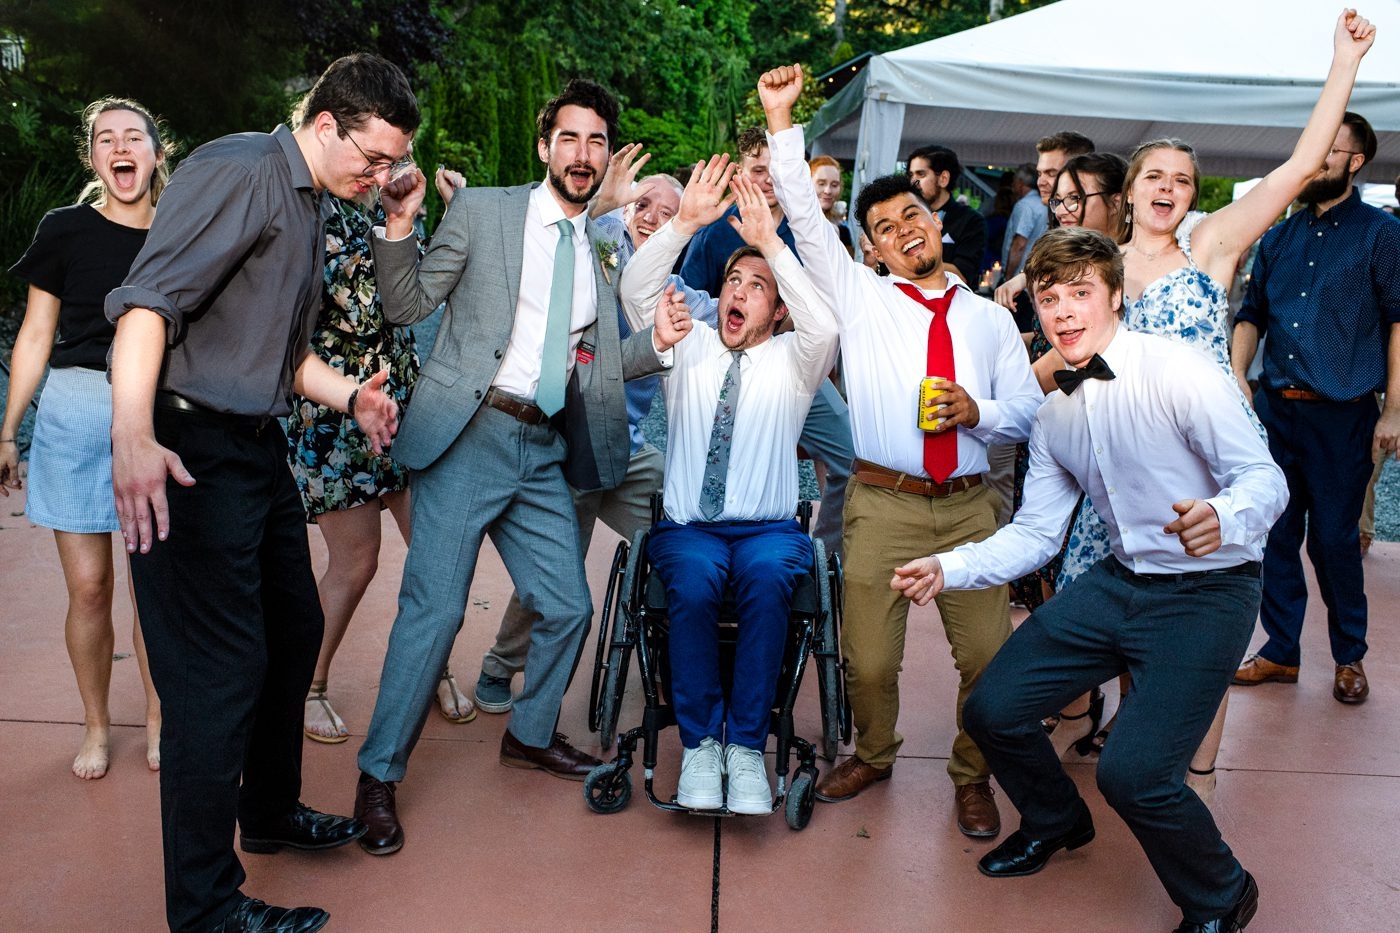 wedding-guests-cheer-on-dancefloor